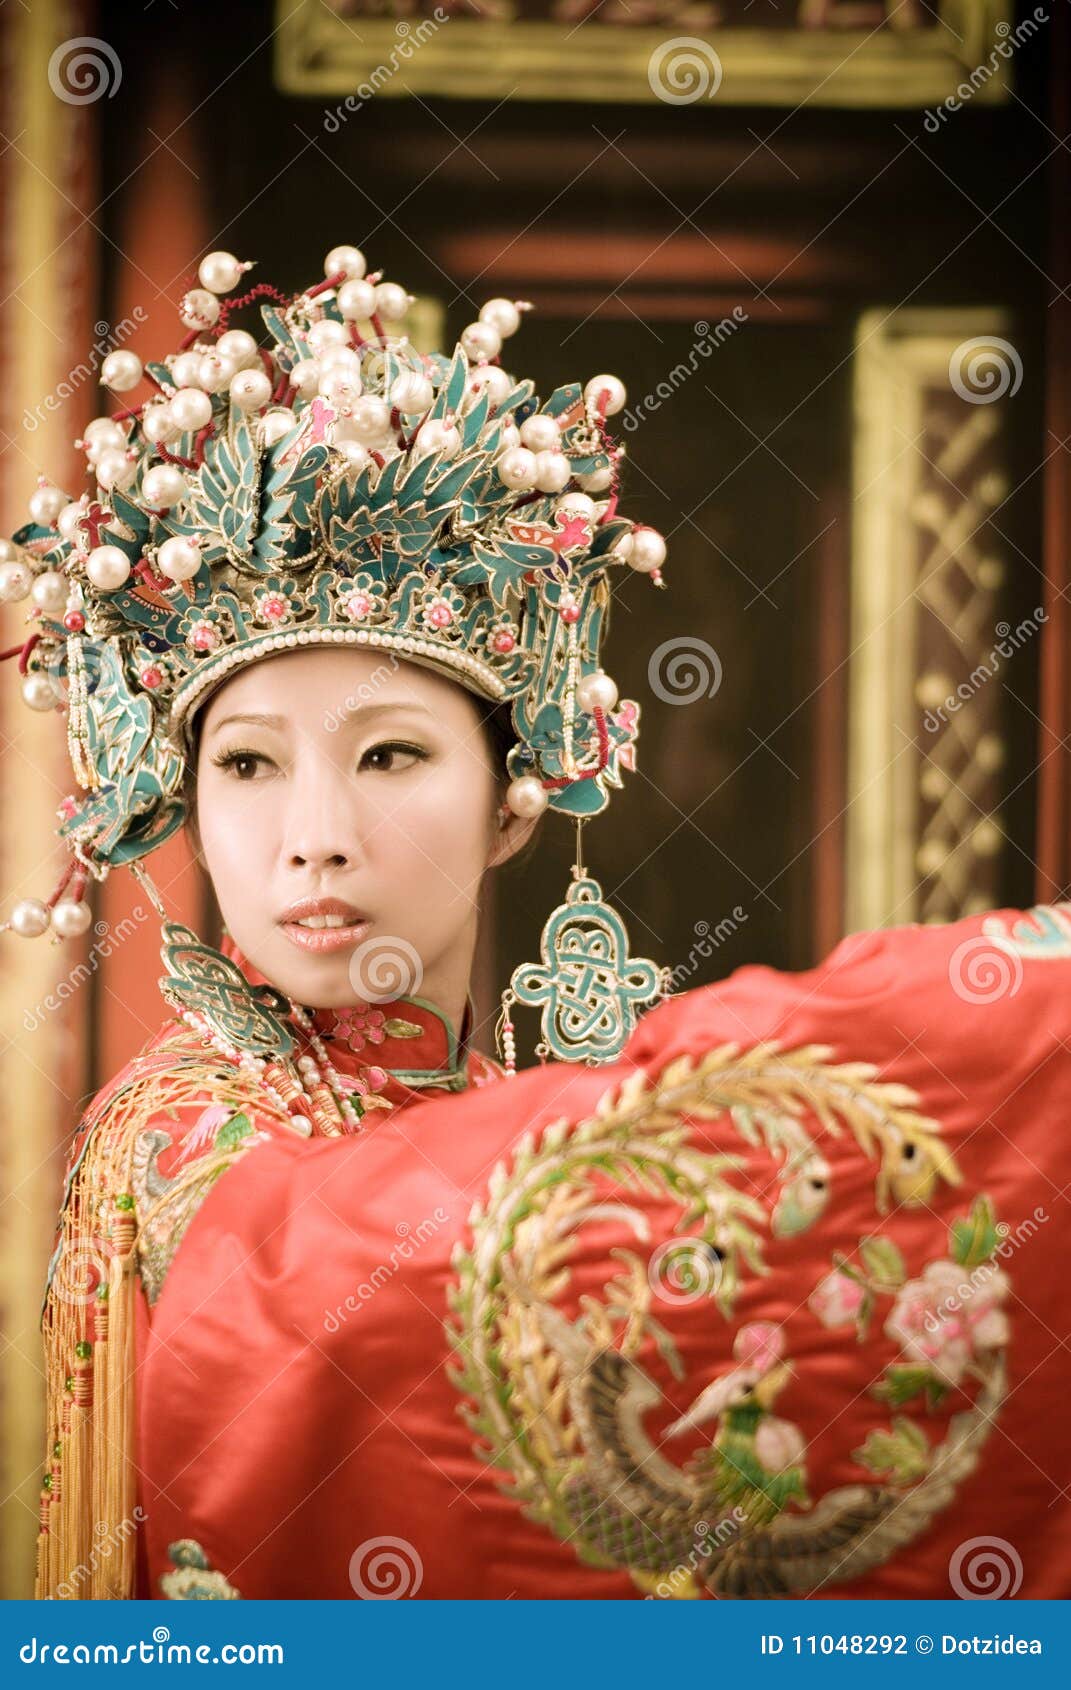 Chinese Opera Woman Portrait Stock Photography - Image: 11048292